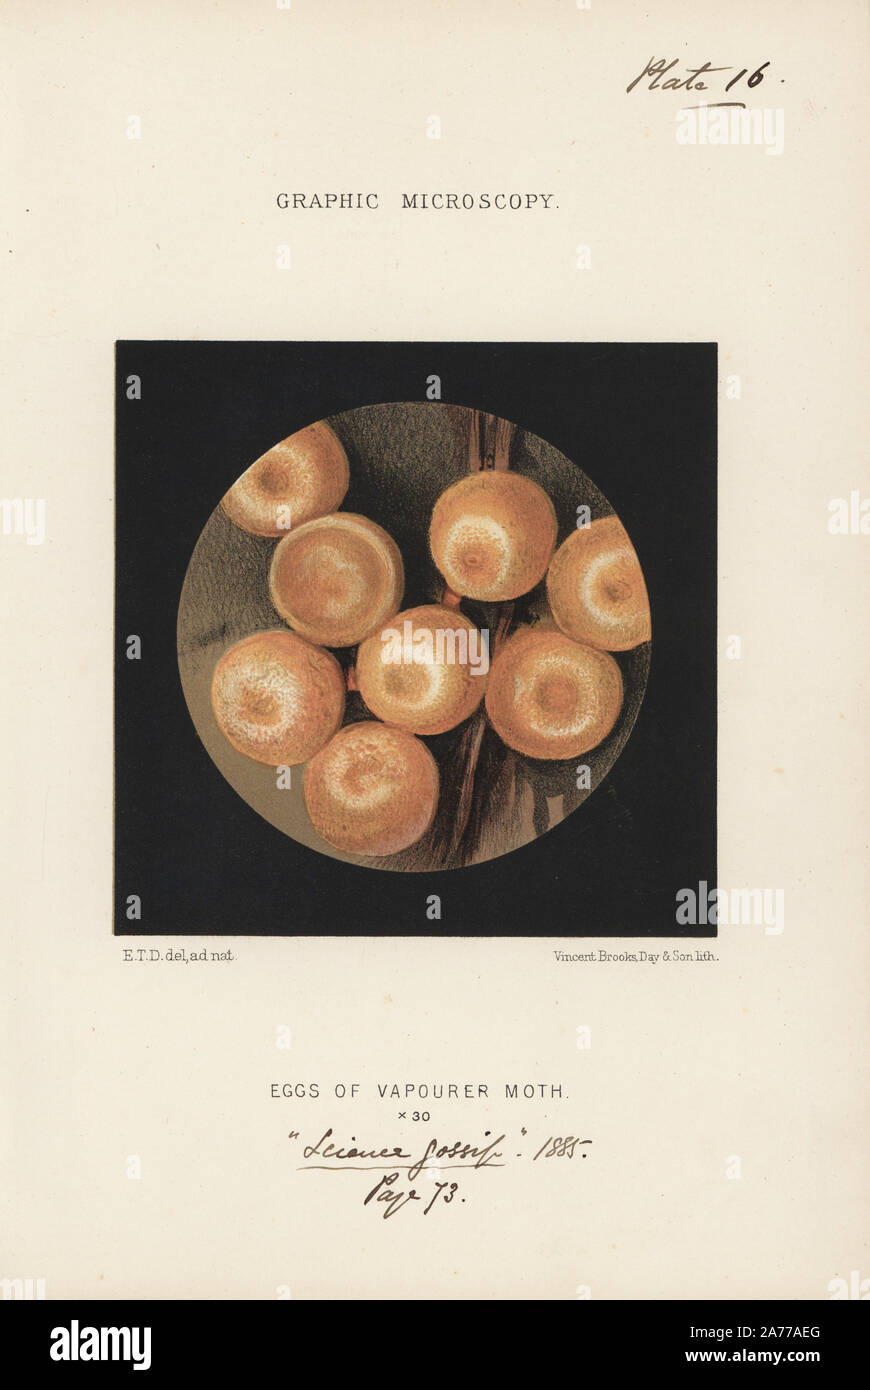 Eier der Vaporer motte Orgyia Antiqua, vergrößerte x30. Chromolithograph nach einer Illustration von E.T.D., Lithographiert von Vincent Brooks, von 'Grafik Mikroskopie" Platten zu veranschaulichen" hardwicke's Science Klatsch", London, 1865-1885. Stockfoto